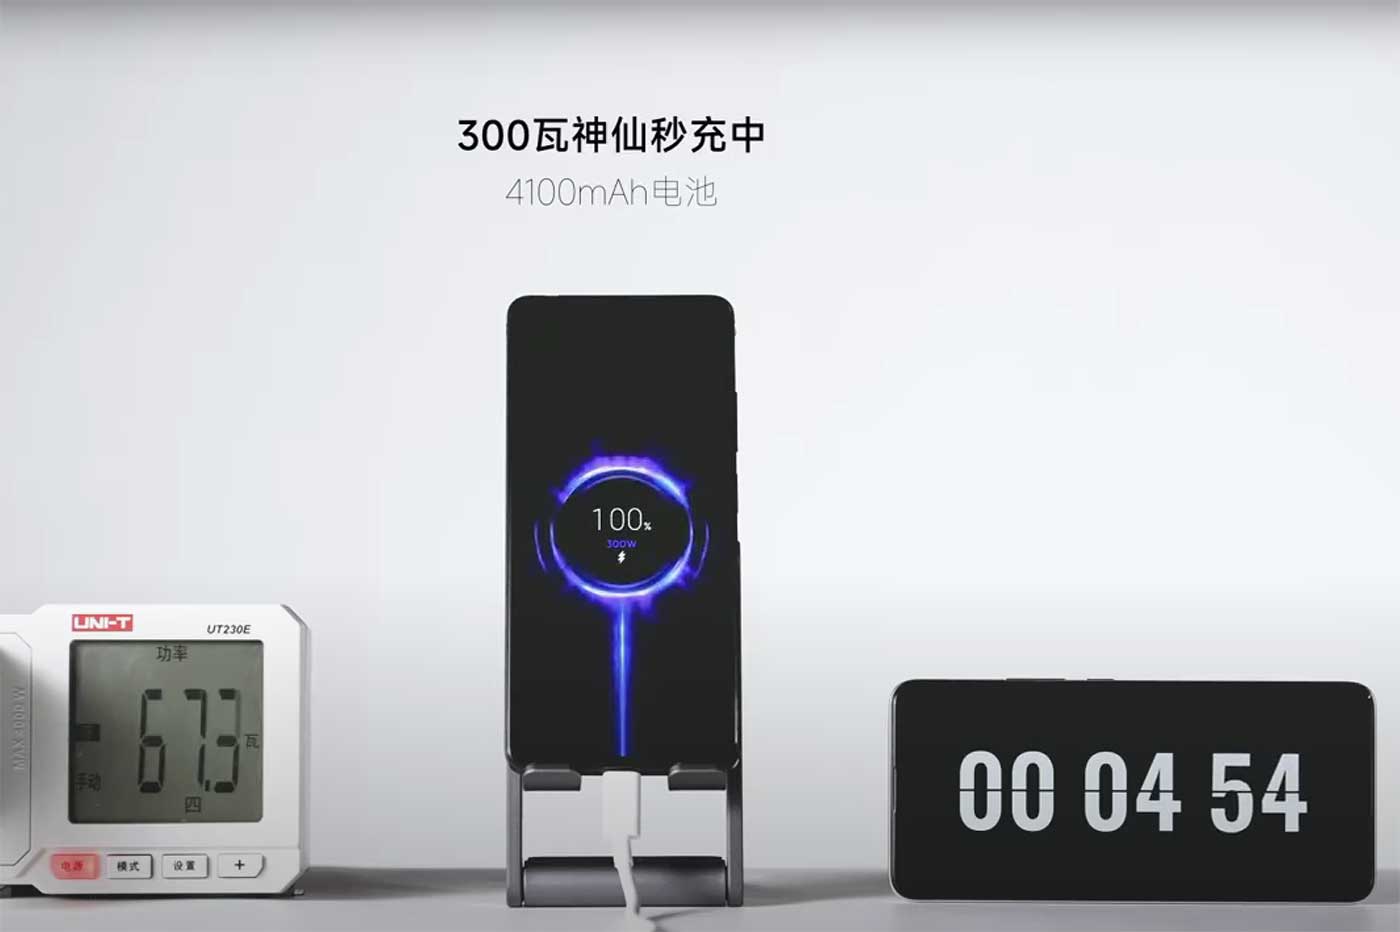 La nouvelle charge rapide en 5 minutes de Xiaomi impressionne